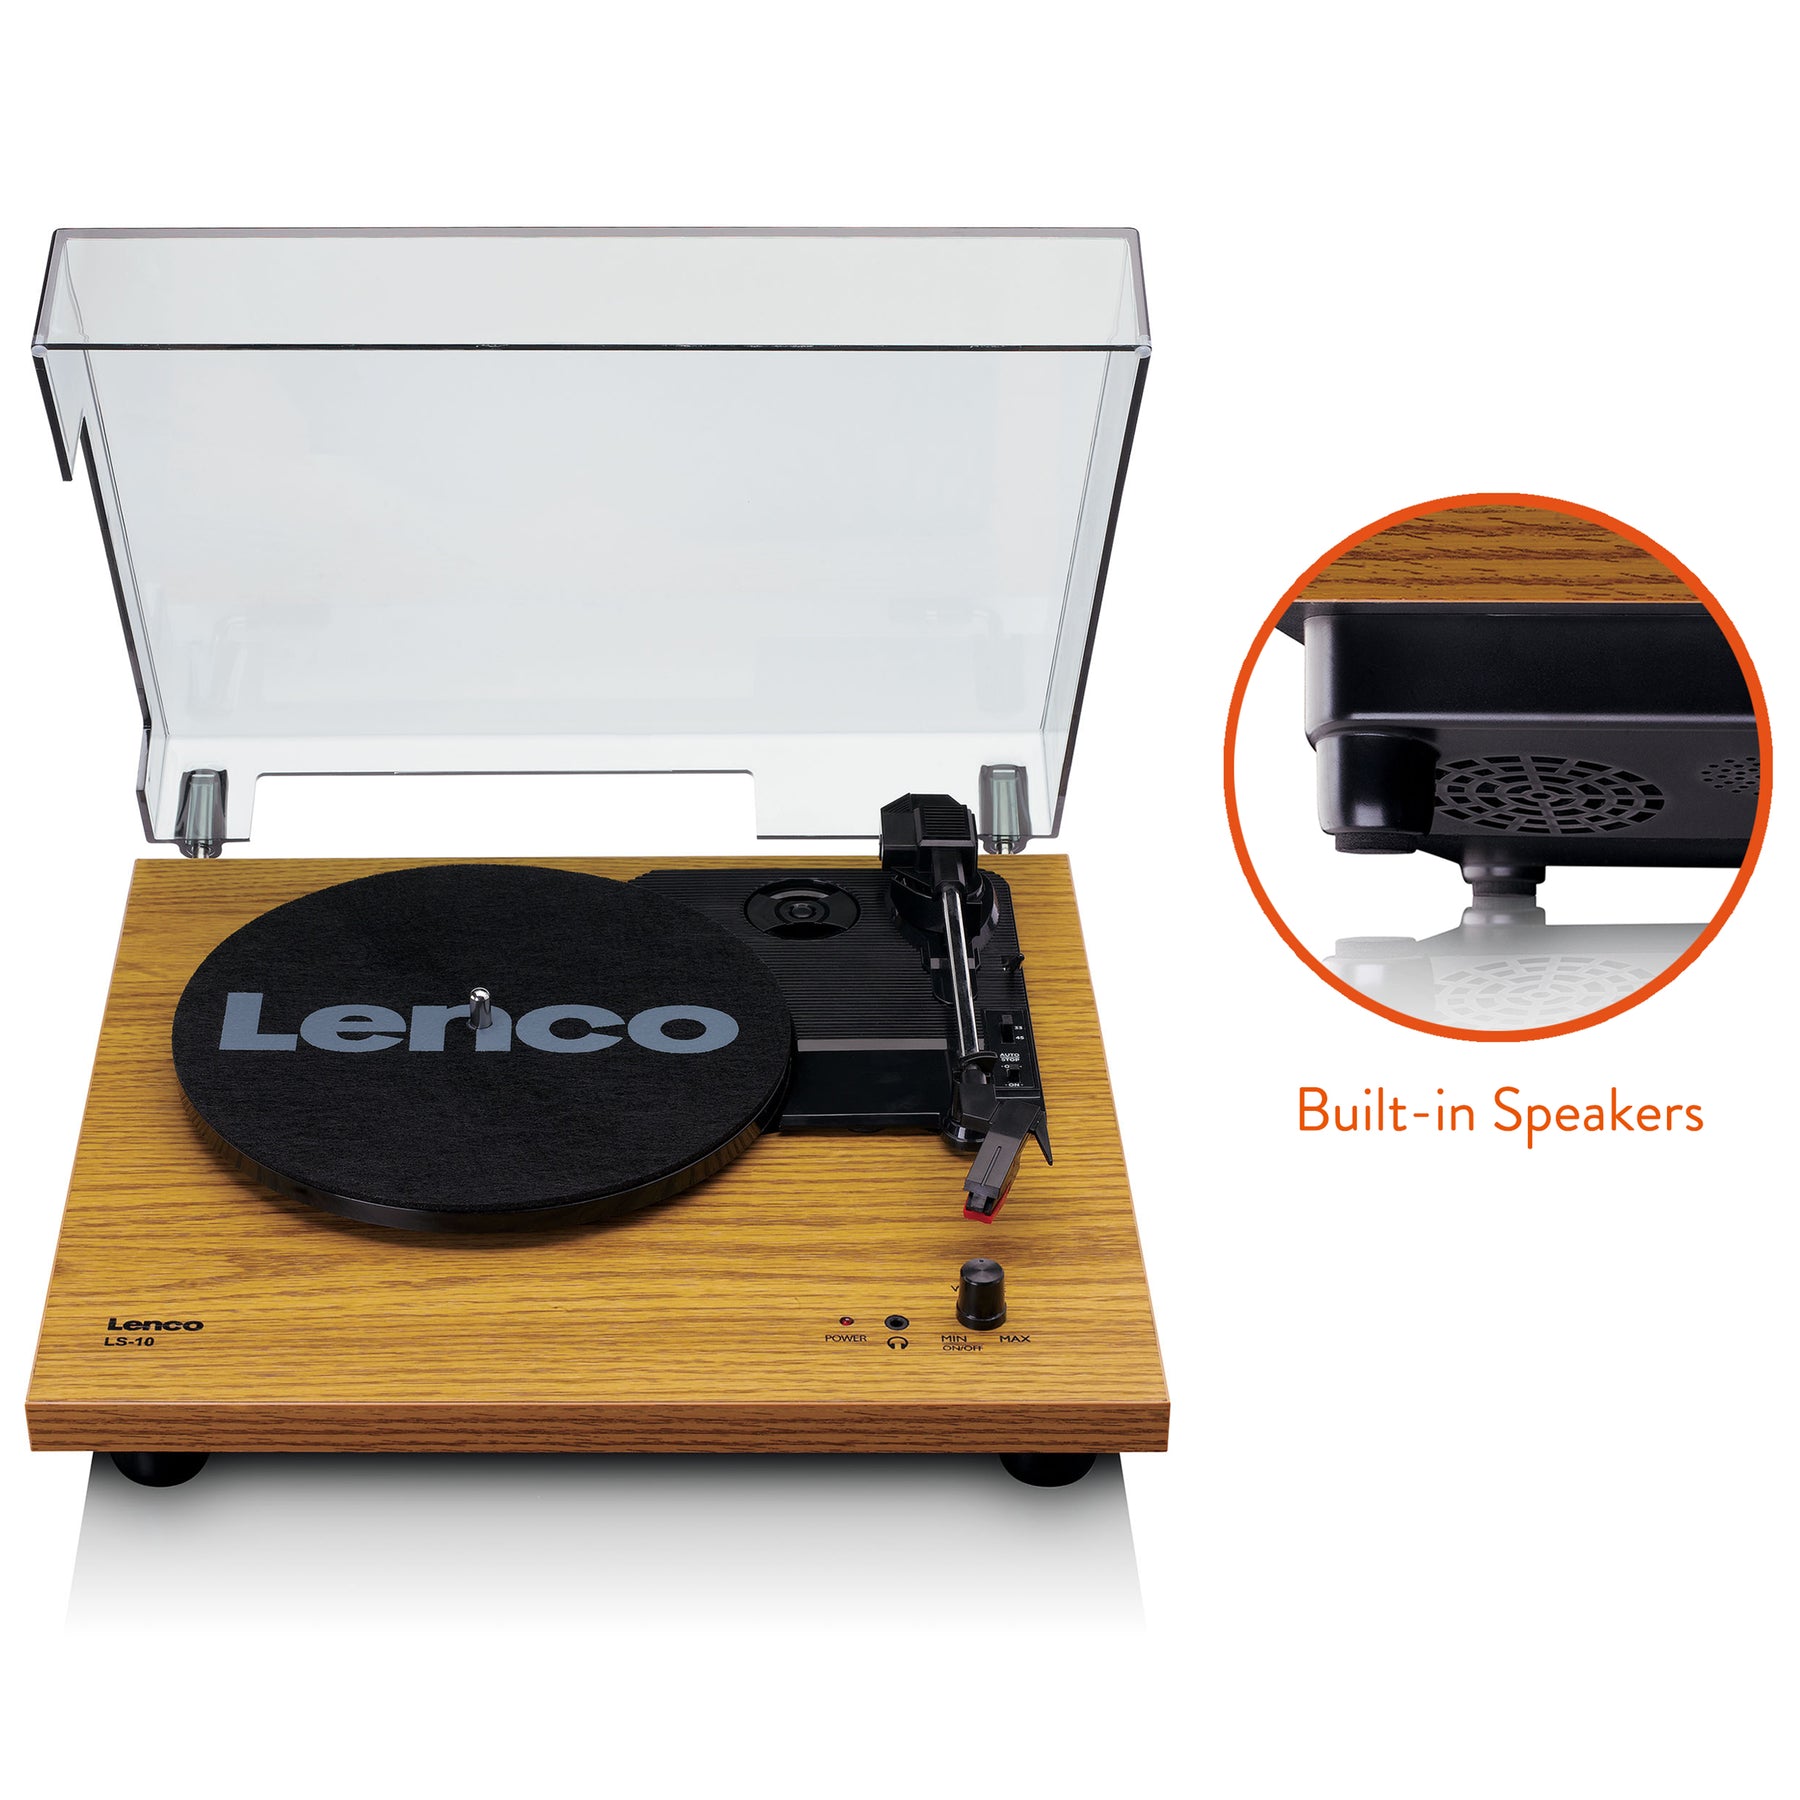 Lenco LS-10 kaufen? | Jetzt – - offiziellen Webshop Webshop Lenco.de Offizieller Lenco im